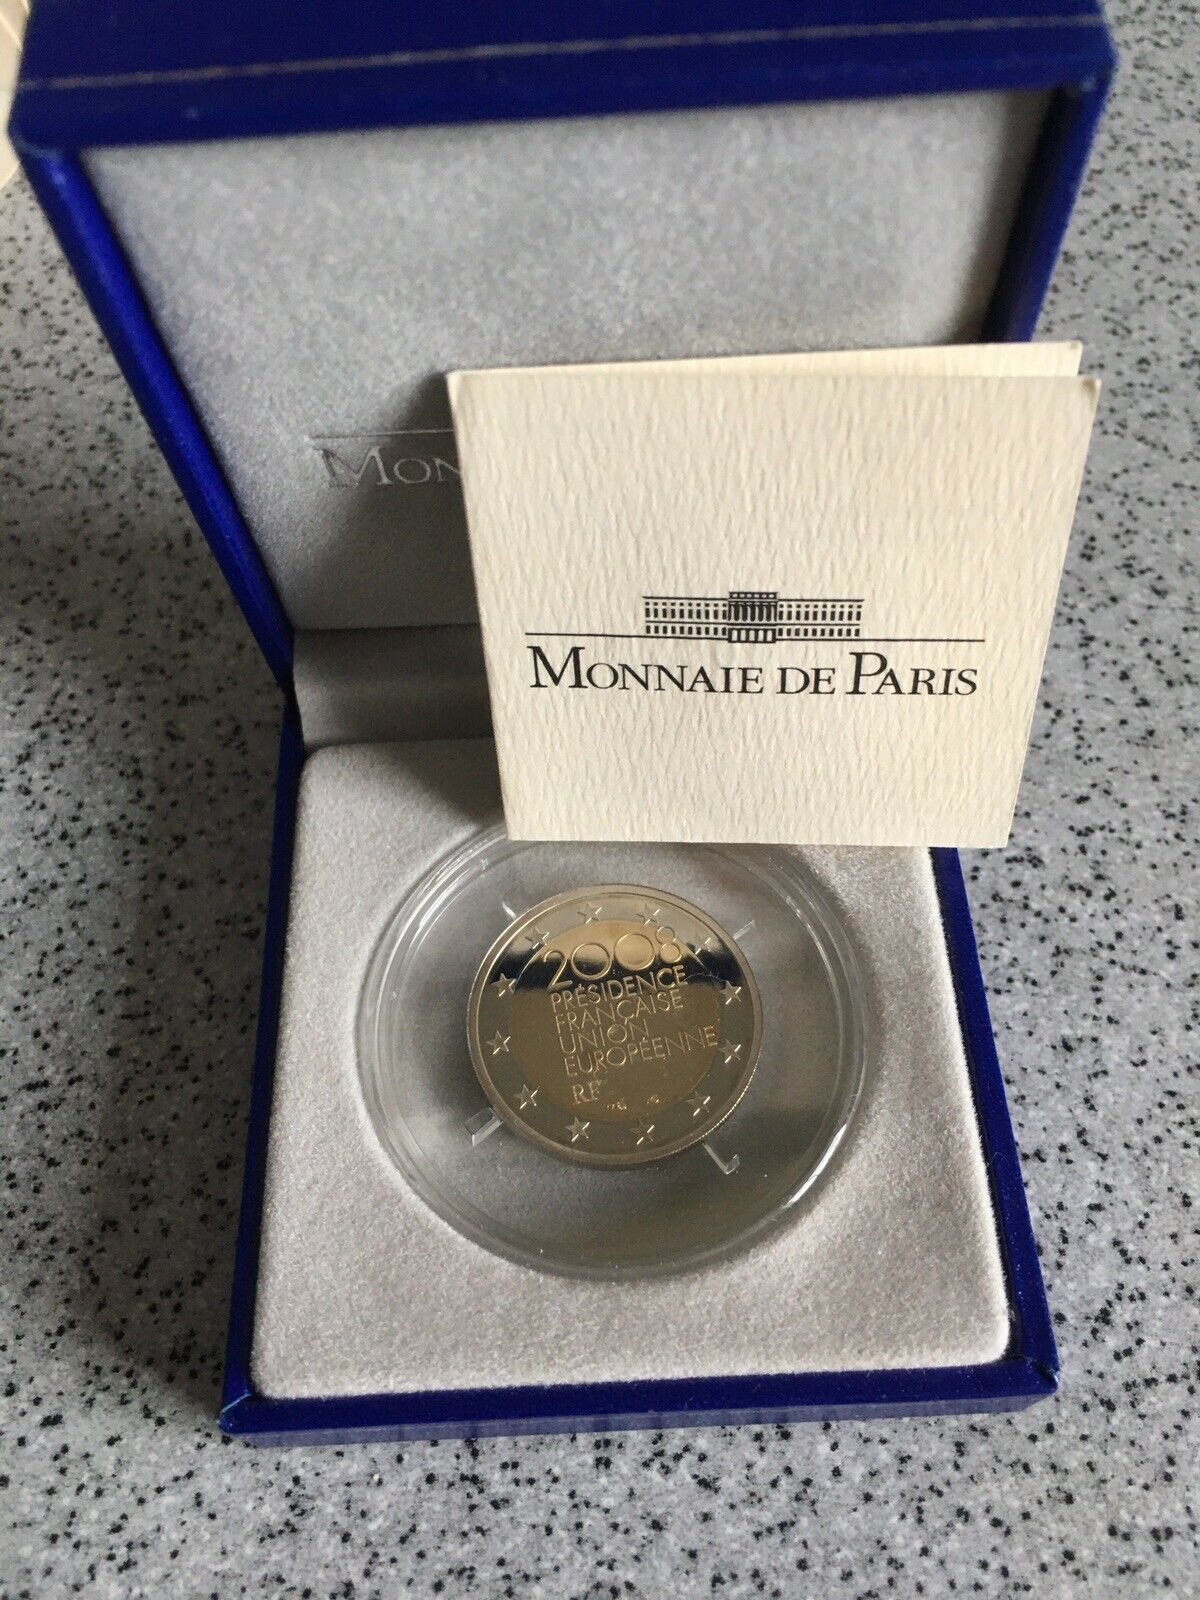 France: 2008 european council presidency €2 commemorative coin